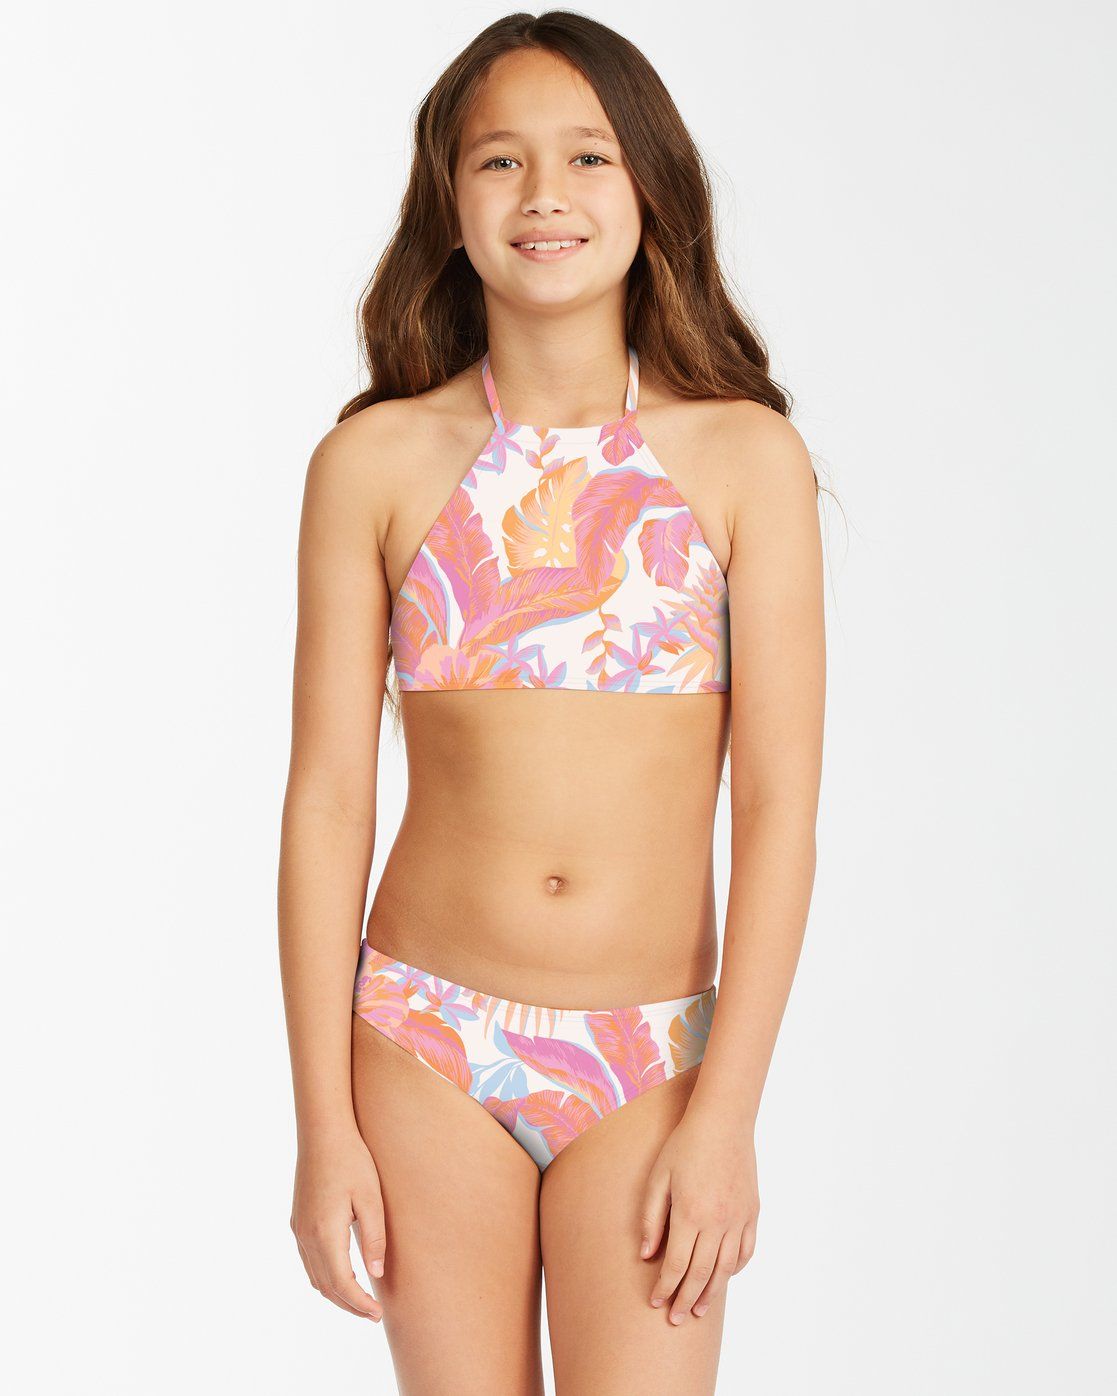 BILLABONG Tropical Punch High Neck Bikini Set Girls Multi Girl's Swimwear Billabong 8 